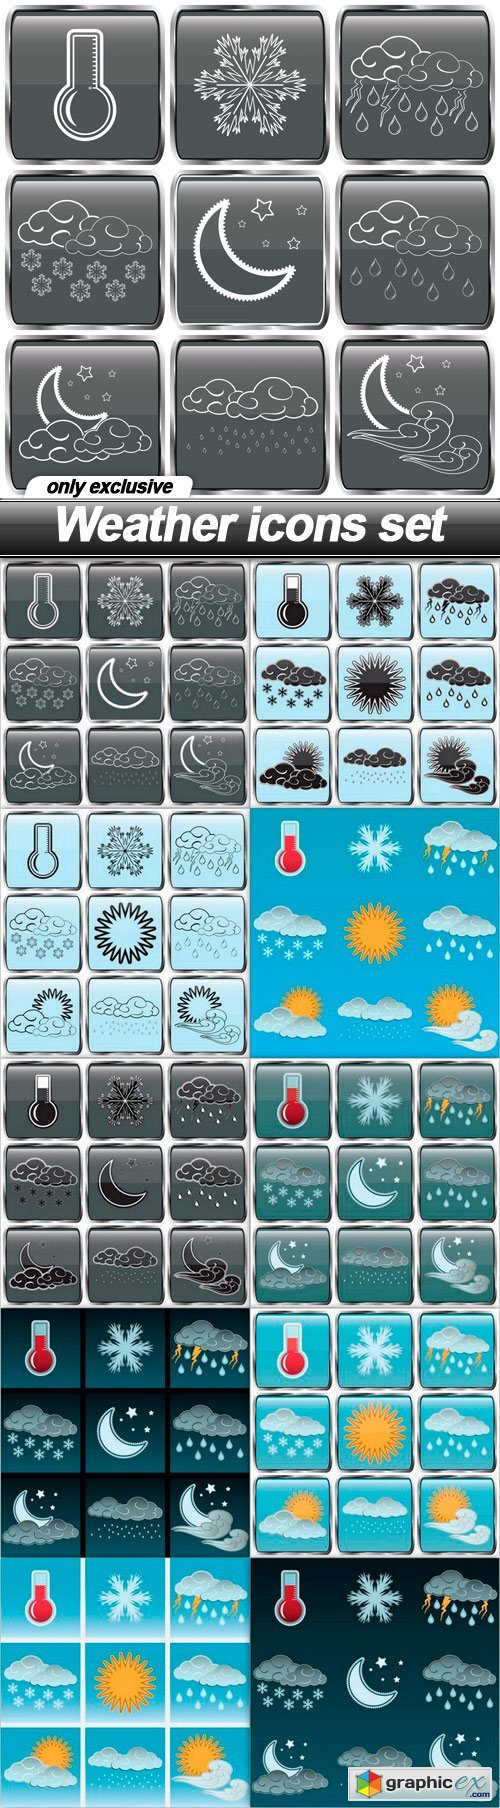 Weather icons set - 10 EPS